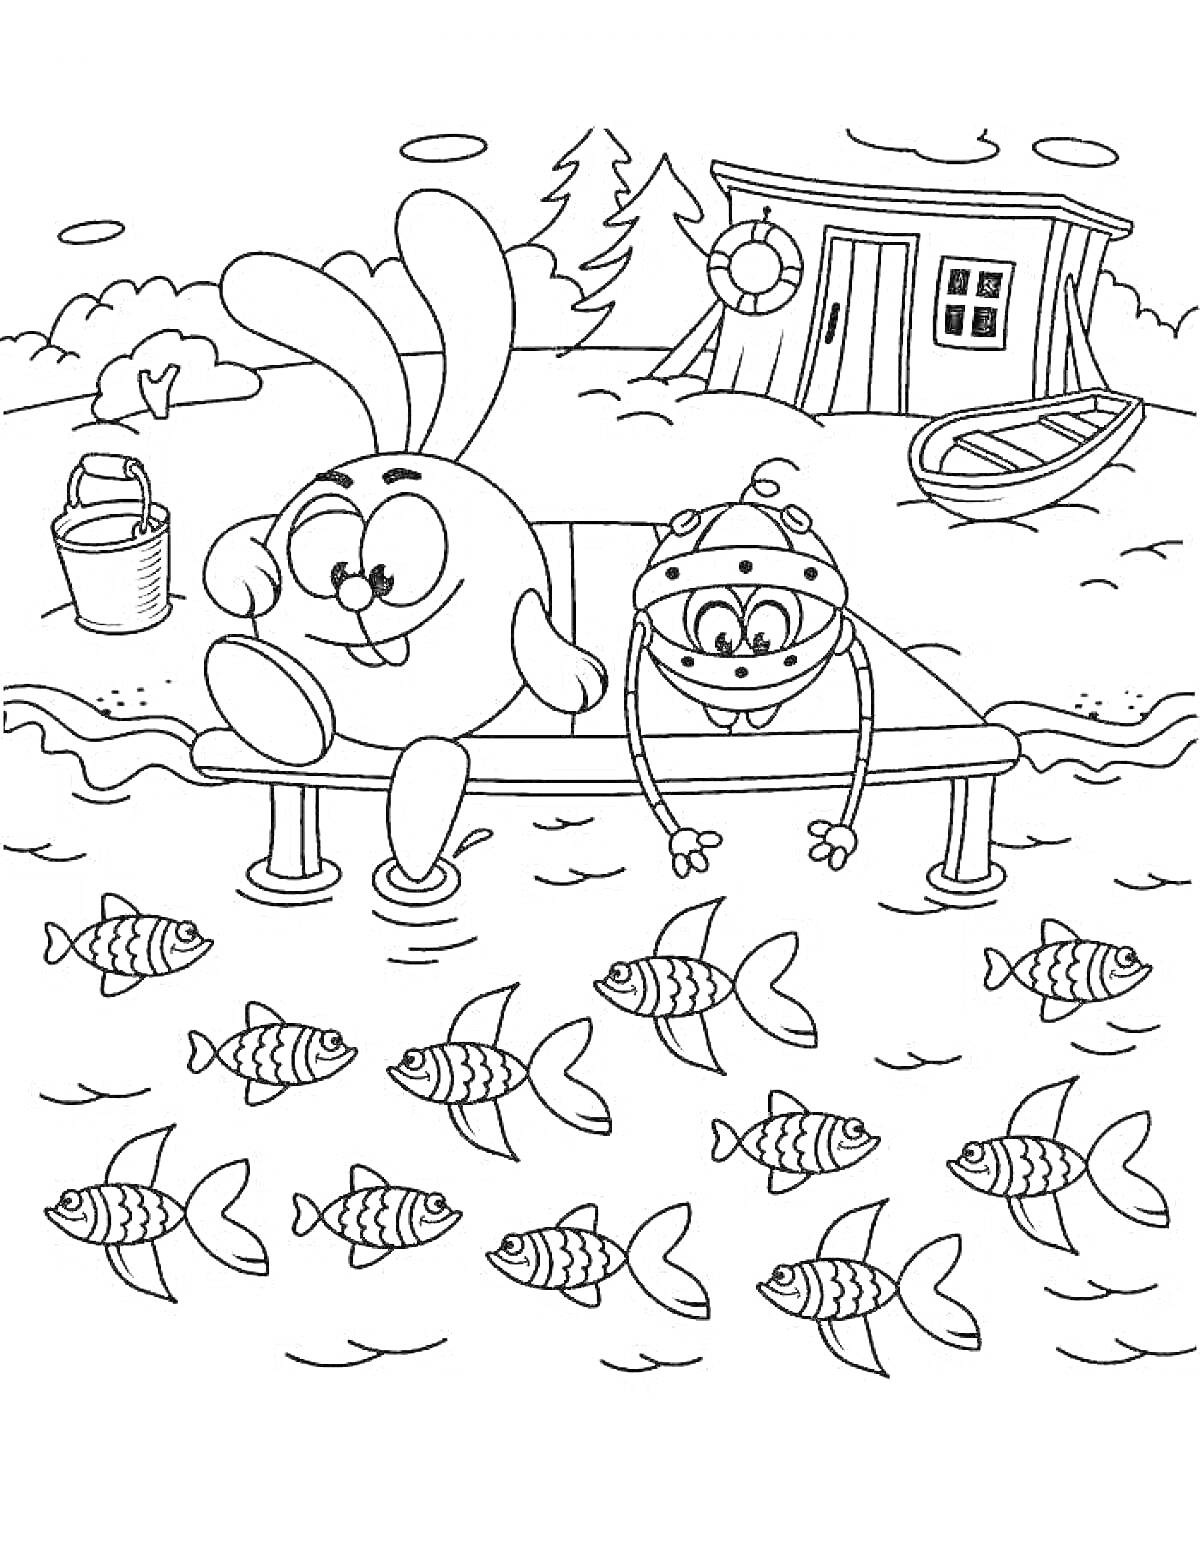 Смешарики на пирсе, два персонажа на пирсе ловят рыбу, дом и лес на заднем плане, ведро и лодка рядом